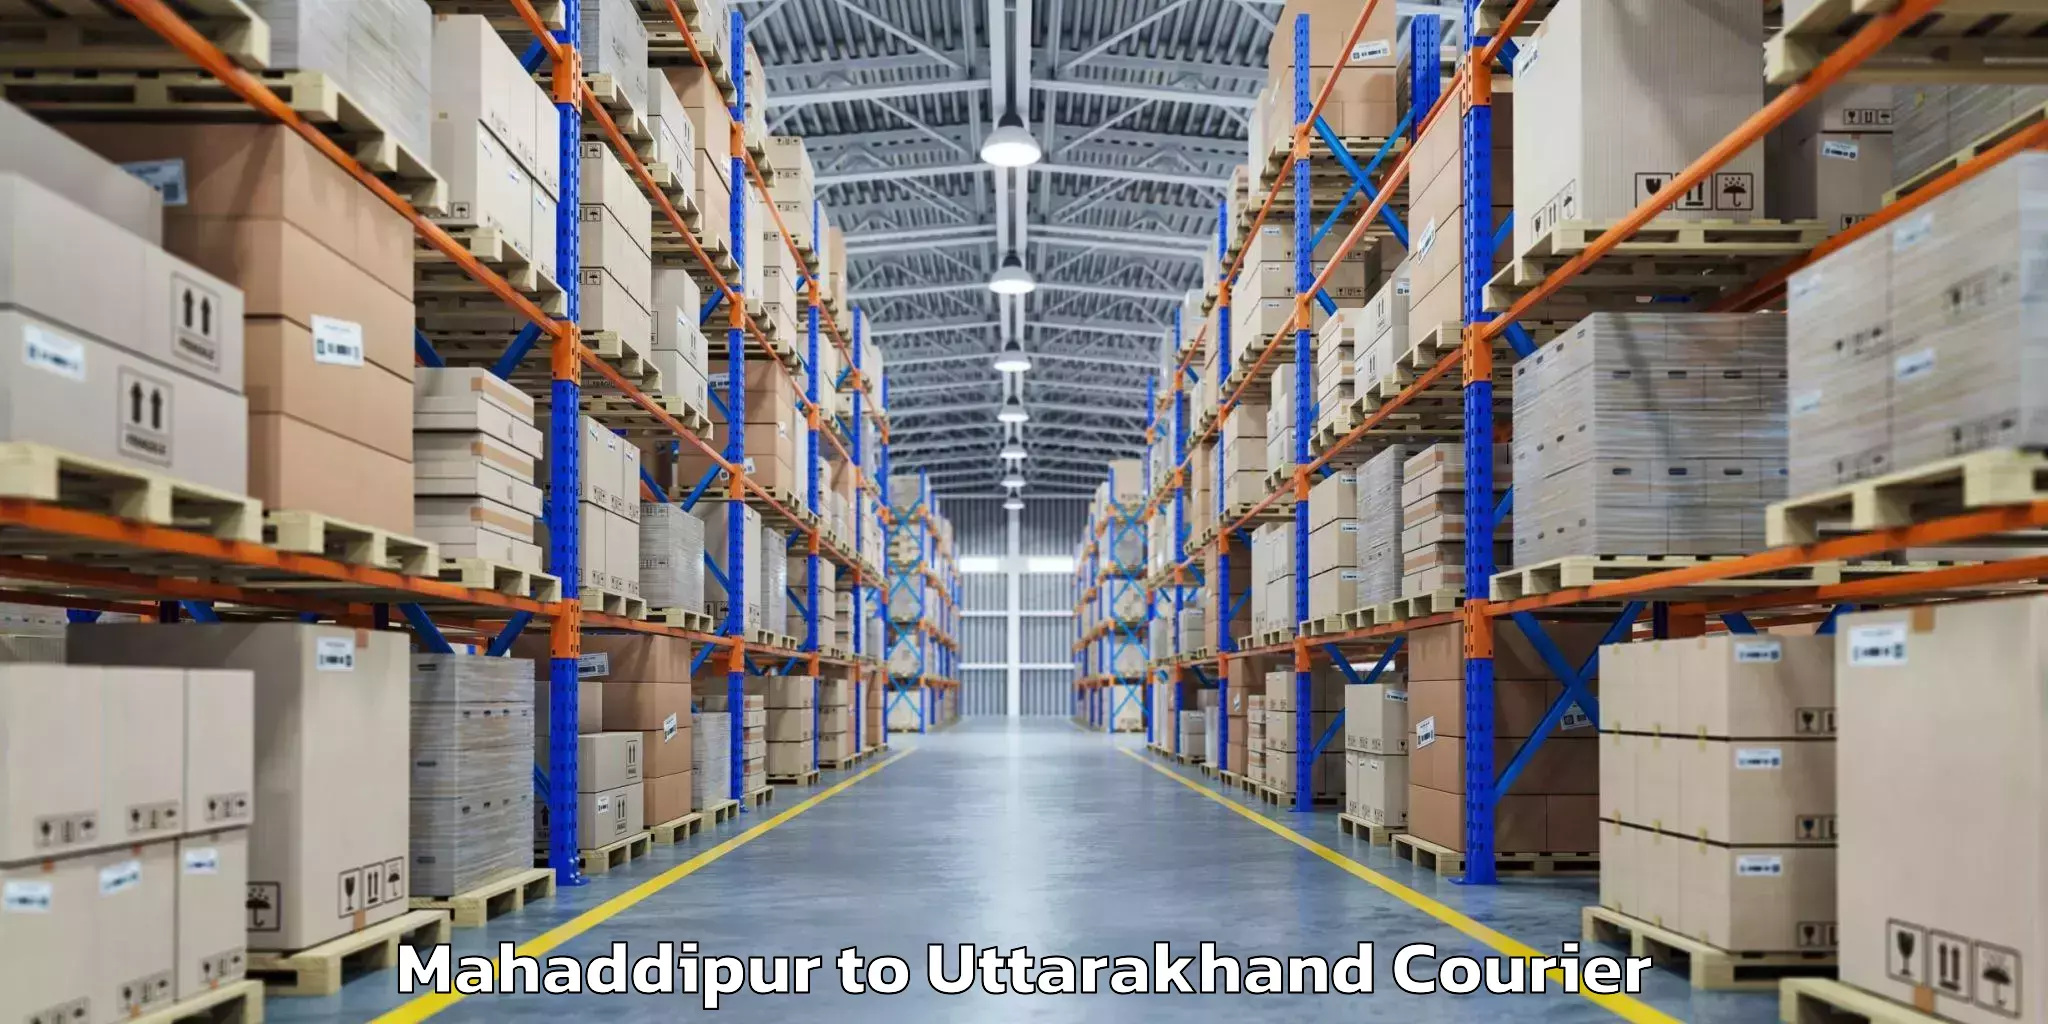 Luggage delivery providers Mahaddipur to Karnaprayag